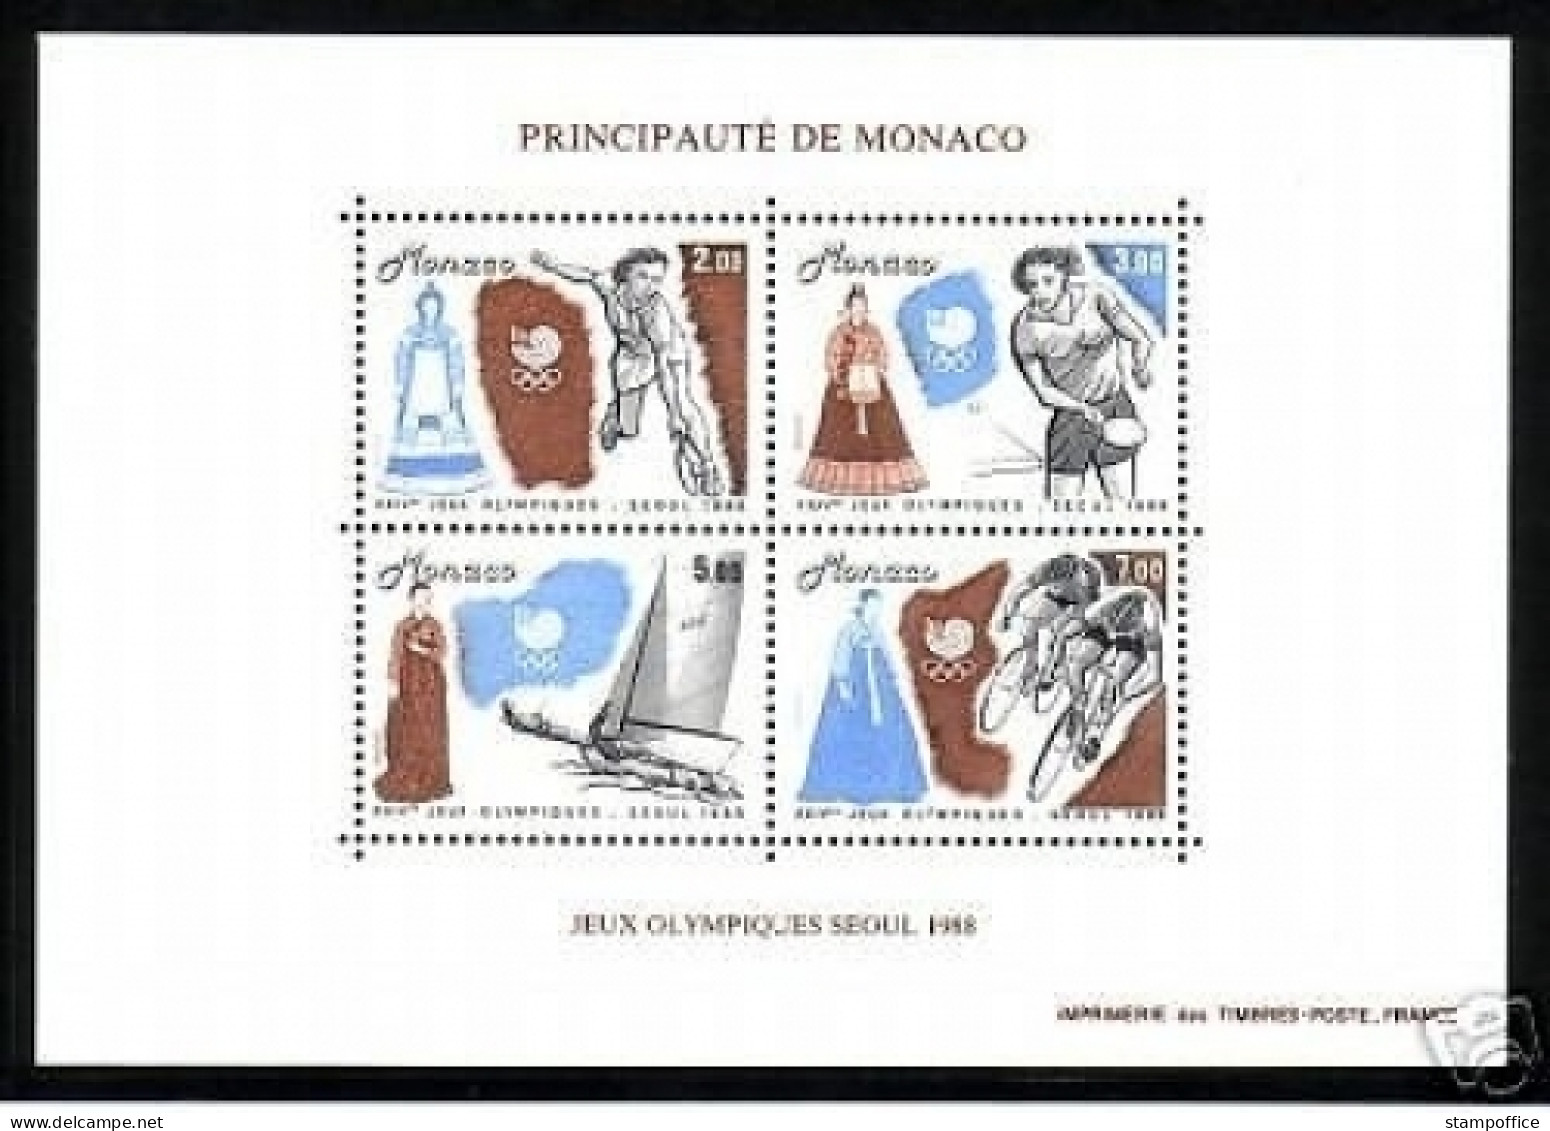 MONACO BLOCK 40 POSTFRISCH(MINT) OLYMPISCHE SOMMERSPIELE SEOUL 1988 TENNIS SEGELN TISCHTENNIS RADFAHREN - Tischtennis